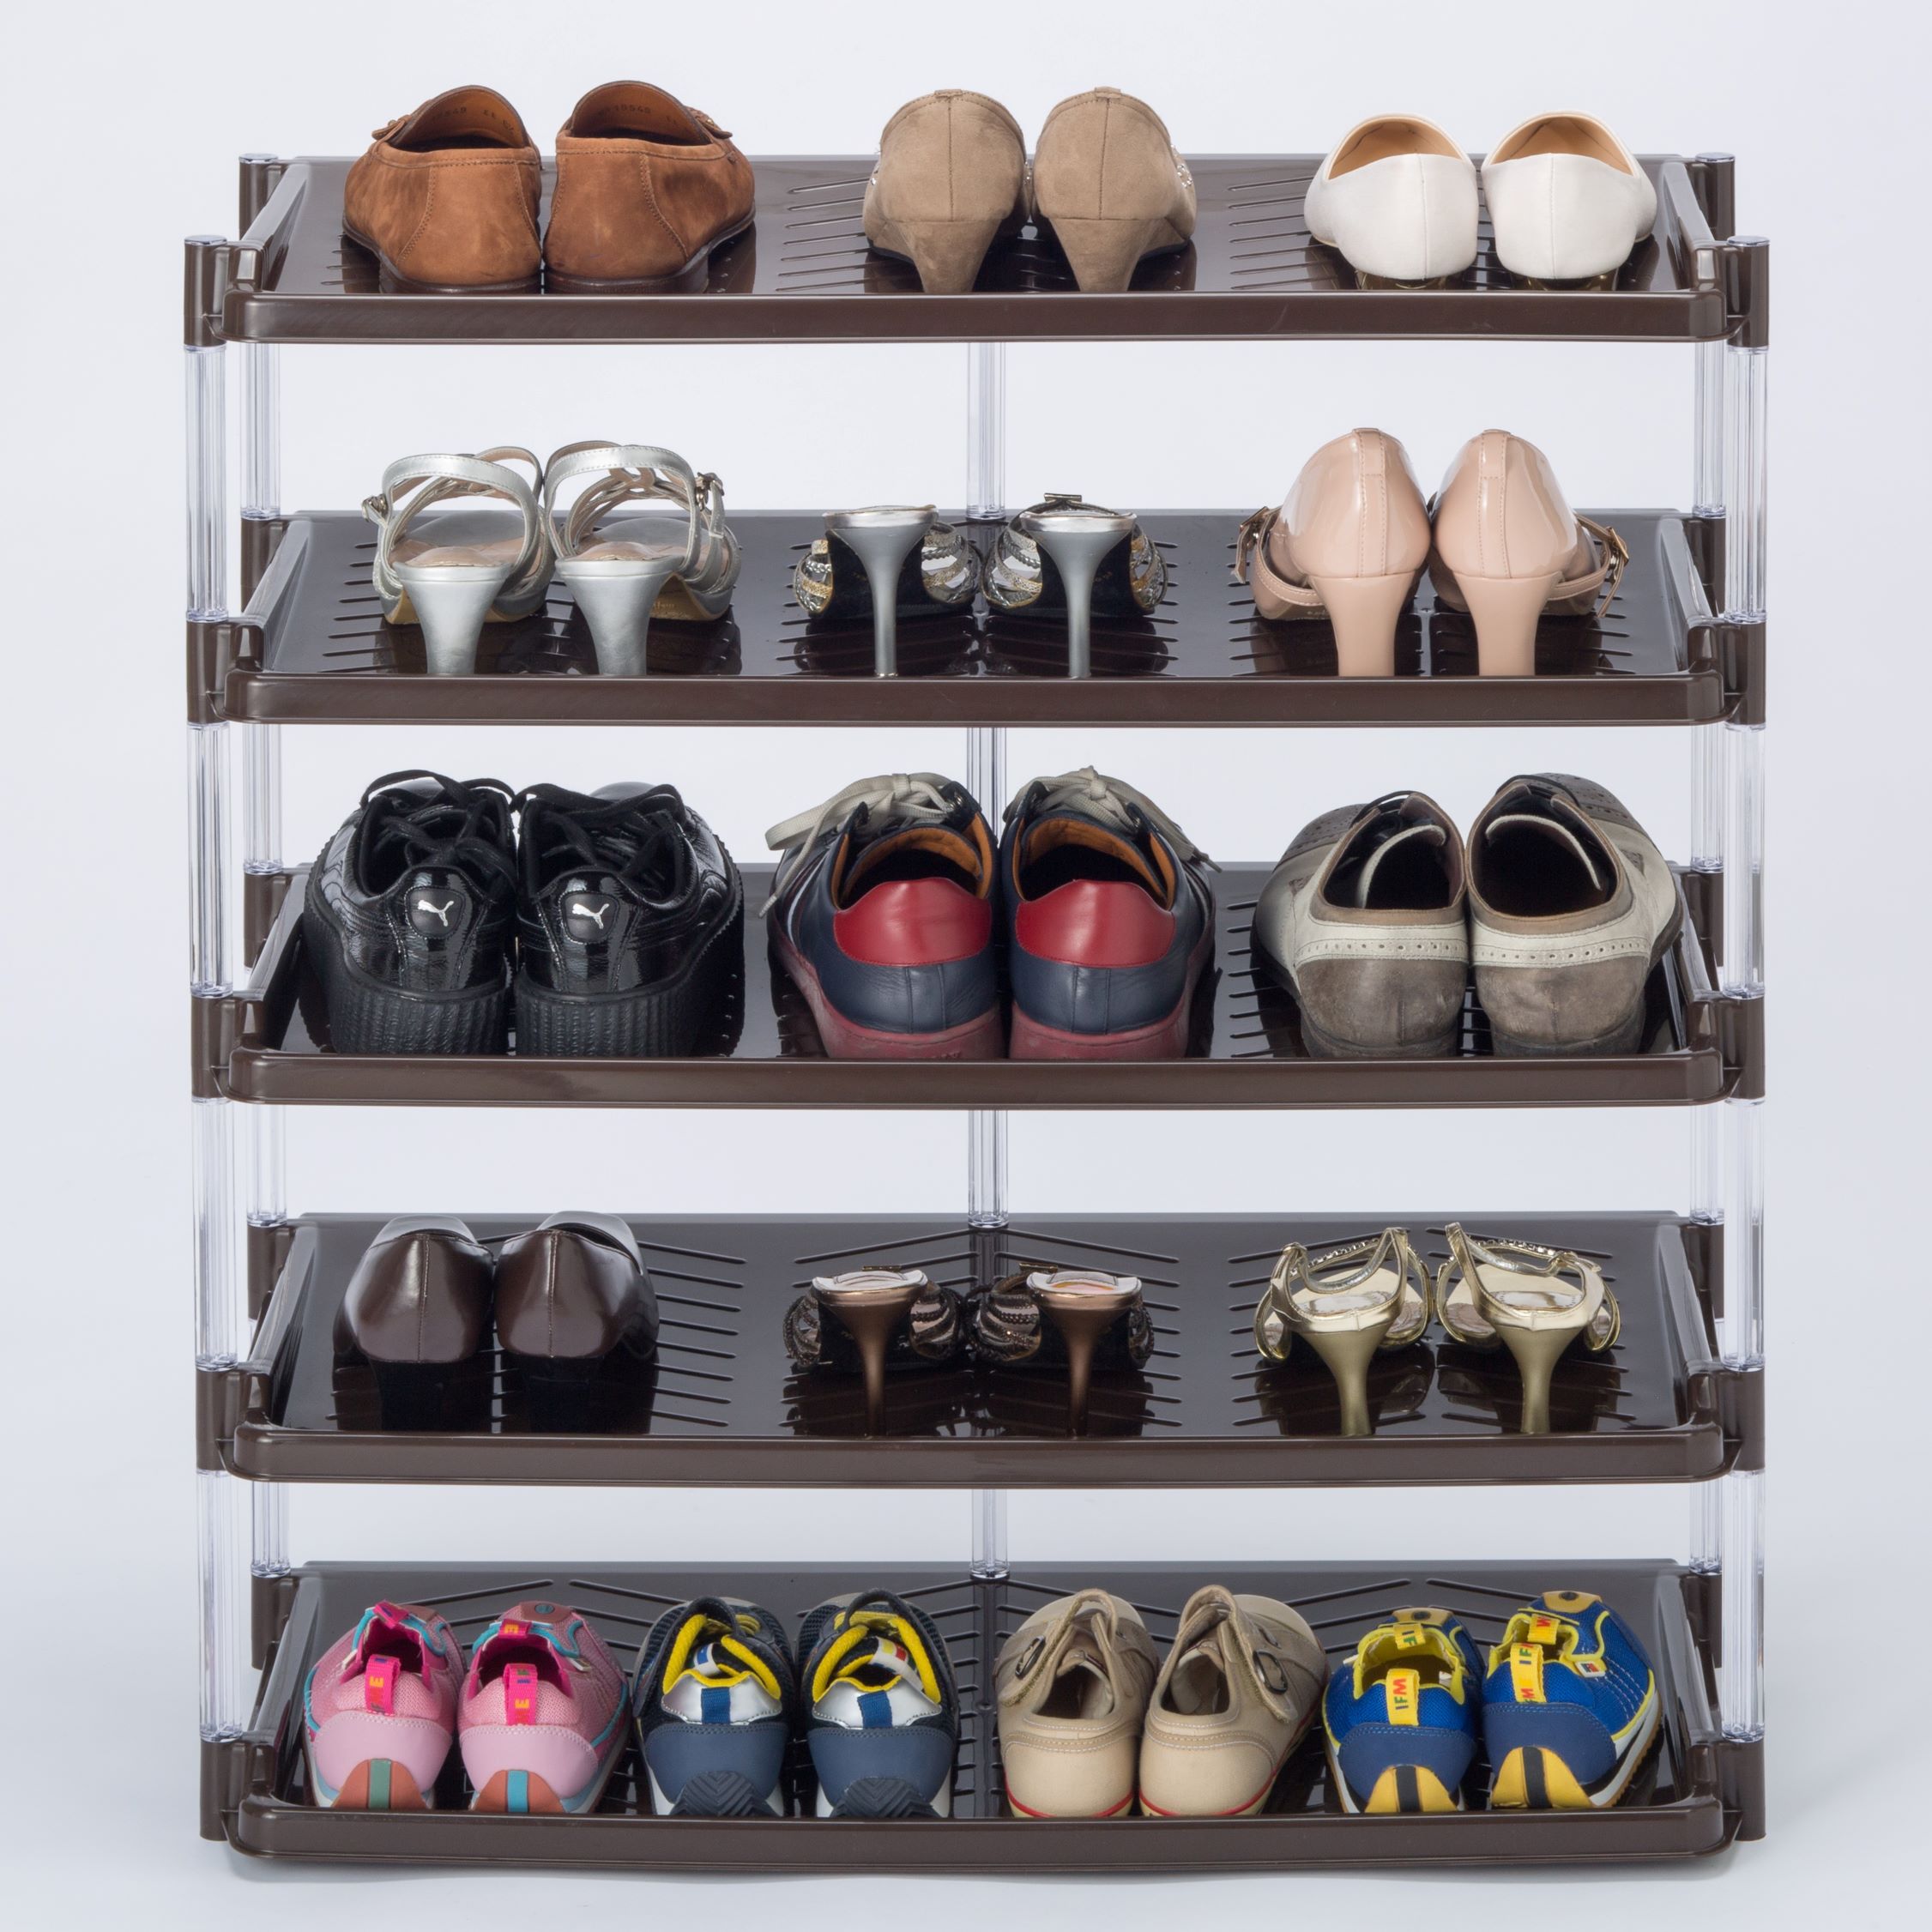 【日本製玄関収納靴を15足収納】1段あたり靴を3足収納クリスタルシューズラックトリプル5段（選べる3色）